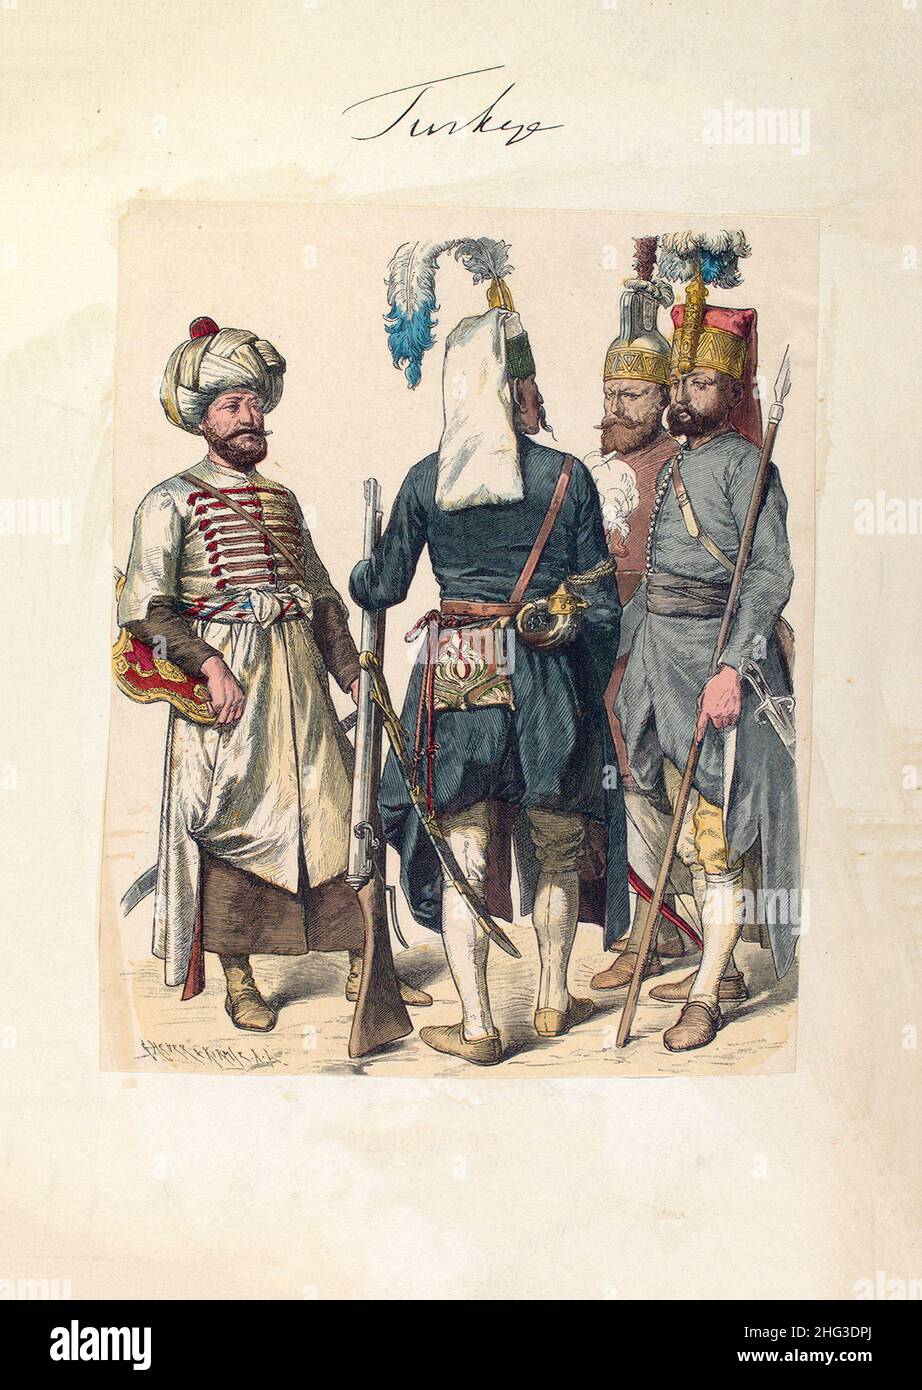 Lithographie der türkischen Armee (osmanische Truppen) von 1600-1805. Janissary. 1910 War Ein Janissary Mitglied der Elite-Infanterieeinheiten, die die Osmanen bildeten Stockfoto